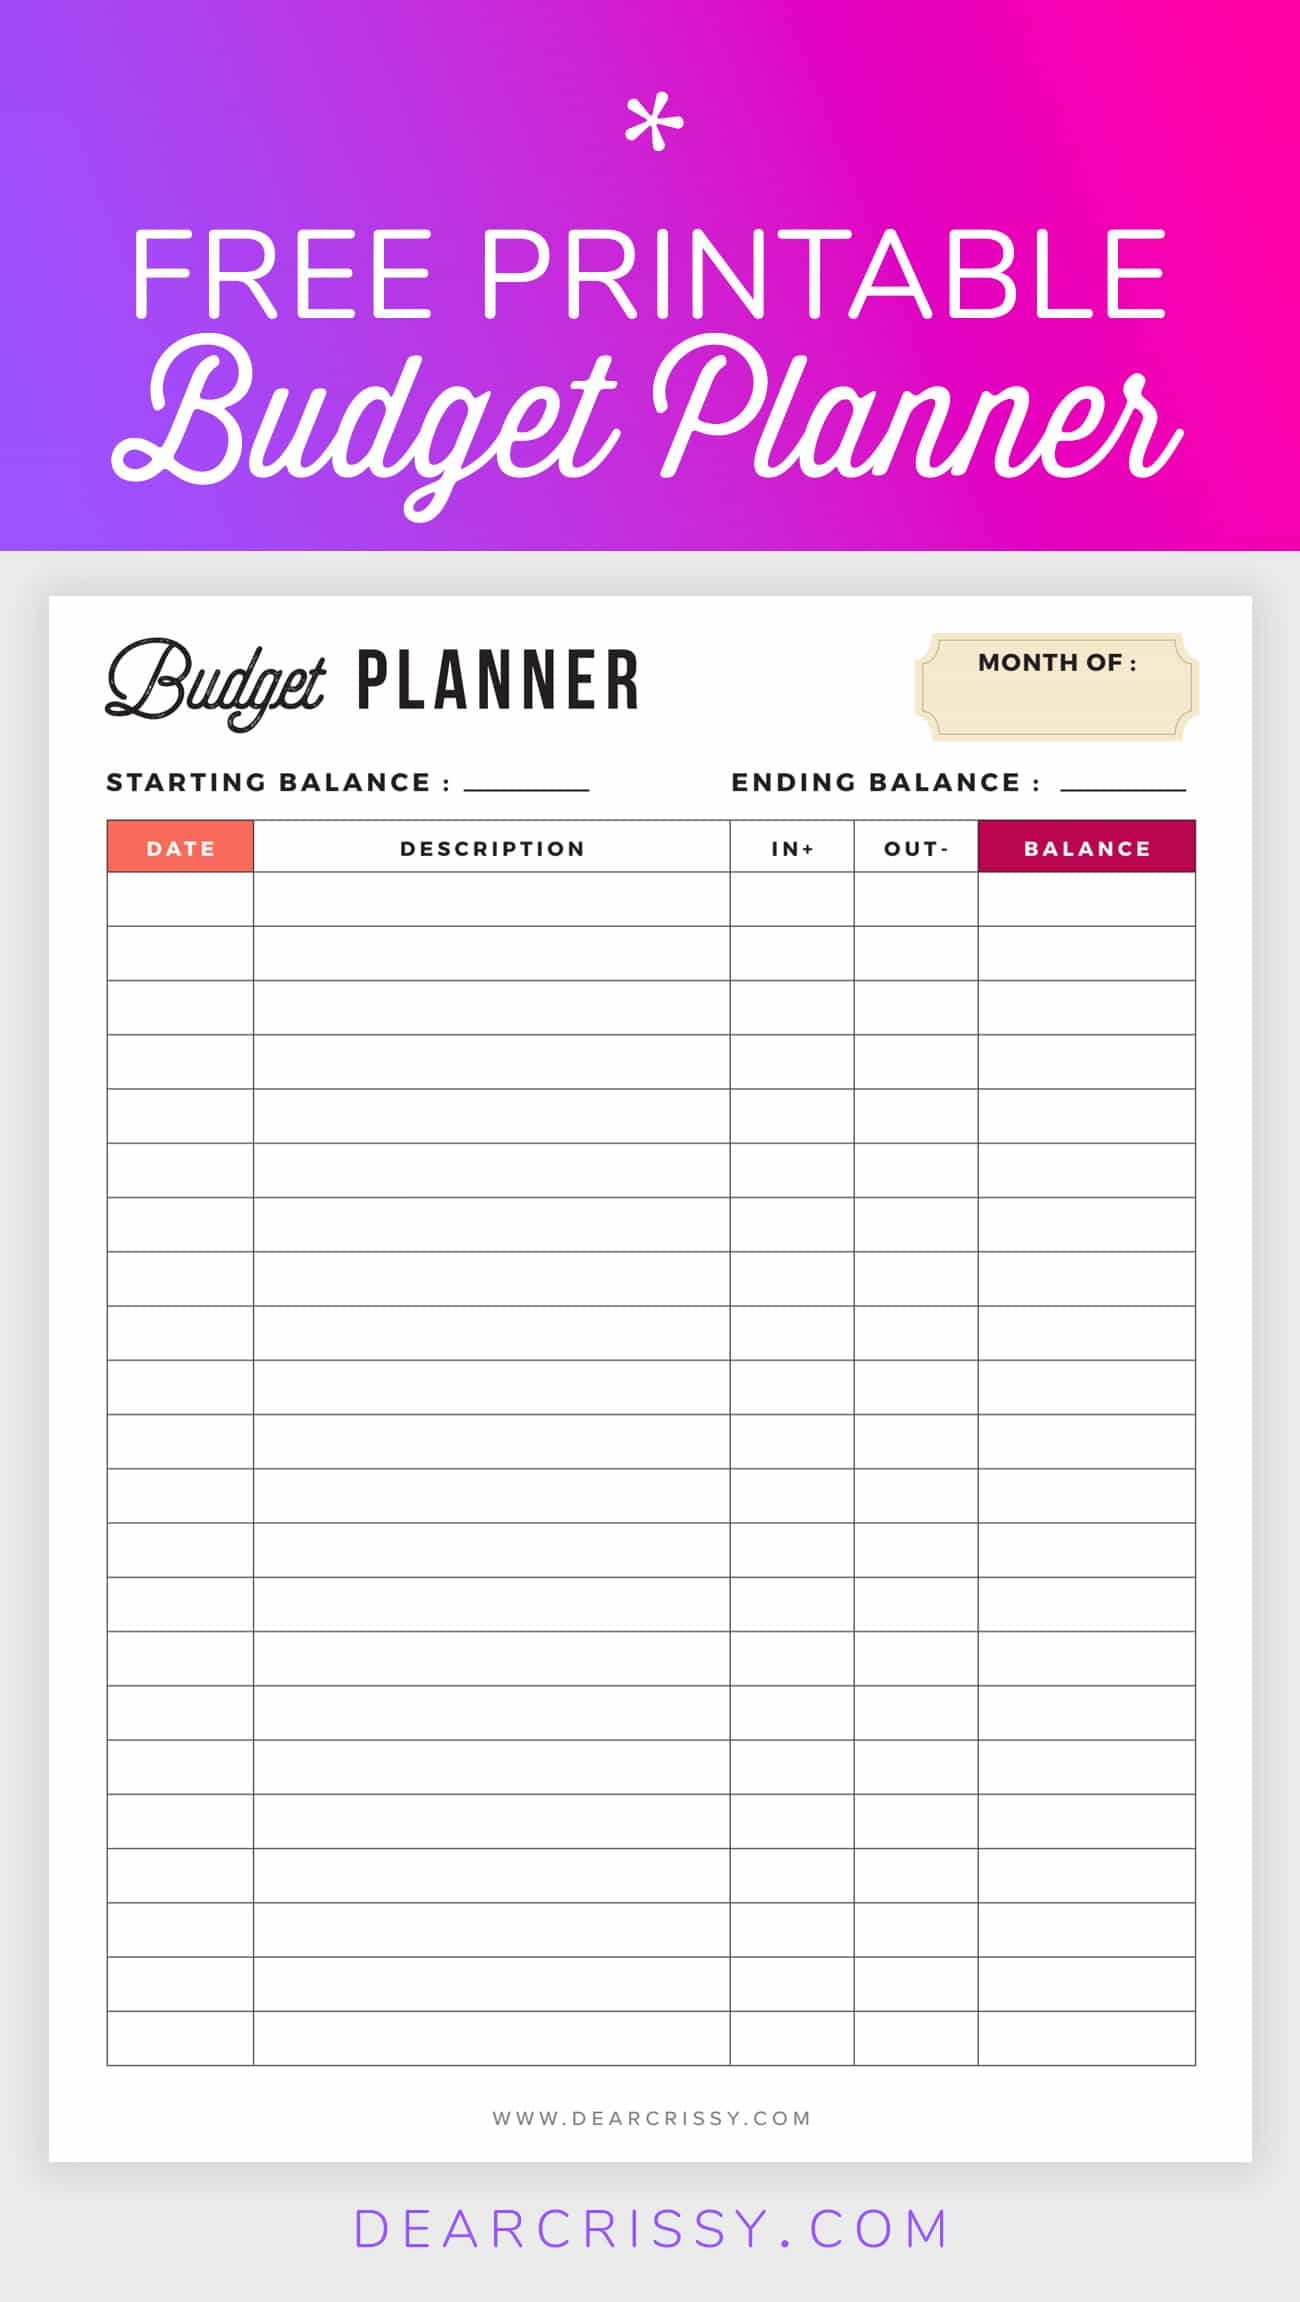 Free Budget Planner Printable - Printable Finance Planner - Free Printable Monthly Budget